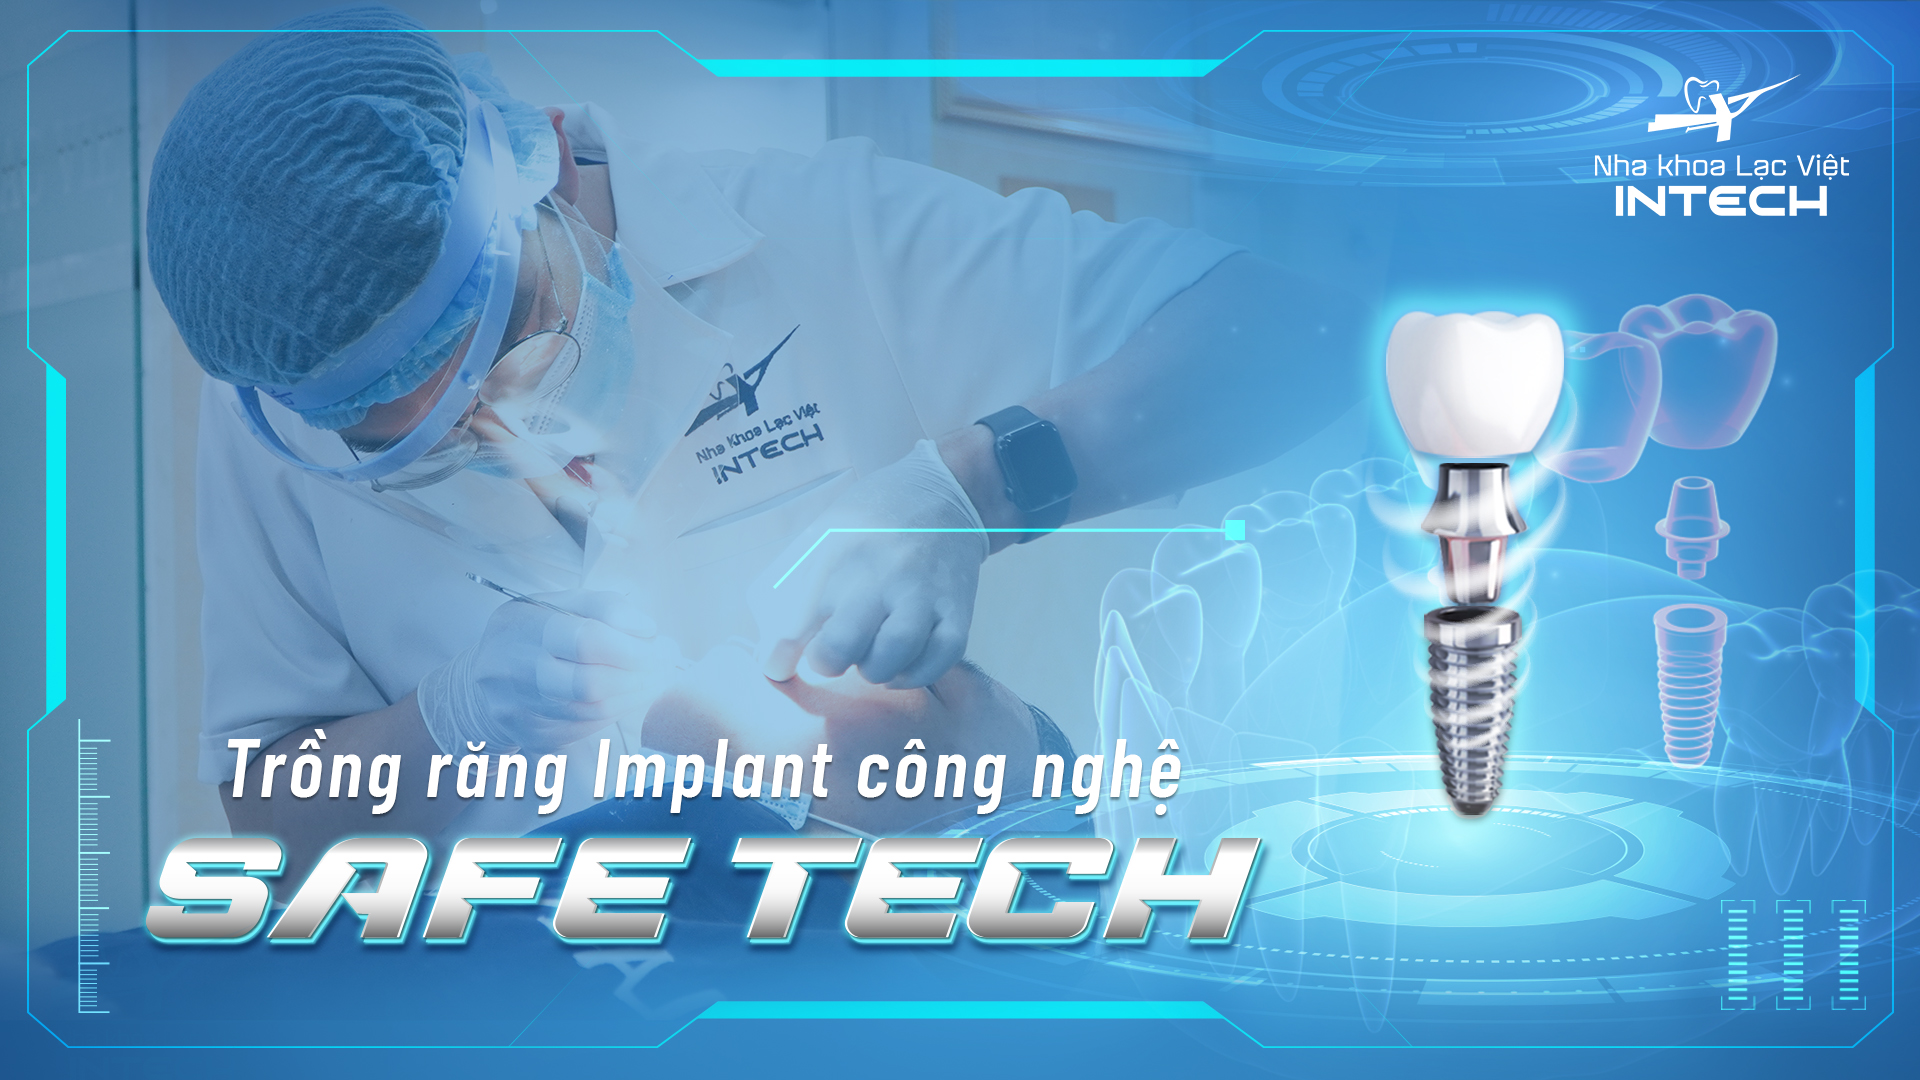 Công nghệ trồng răng Safe Tech độc quyền được ứng dụng tại Lạc Việt Intech